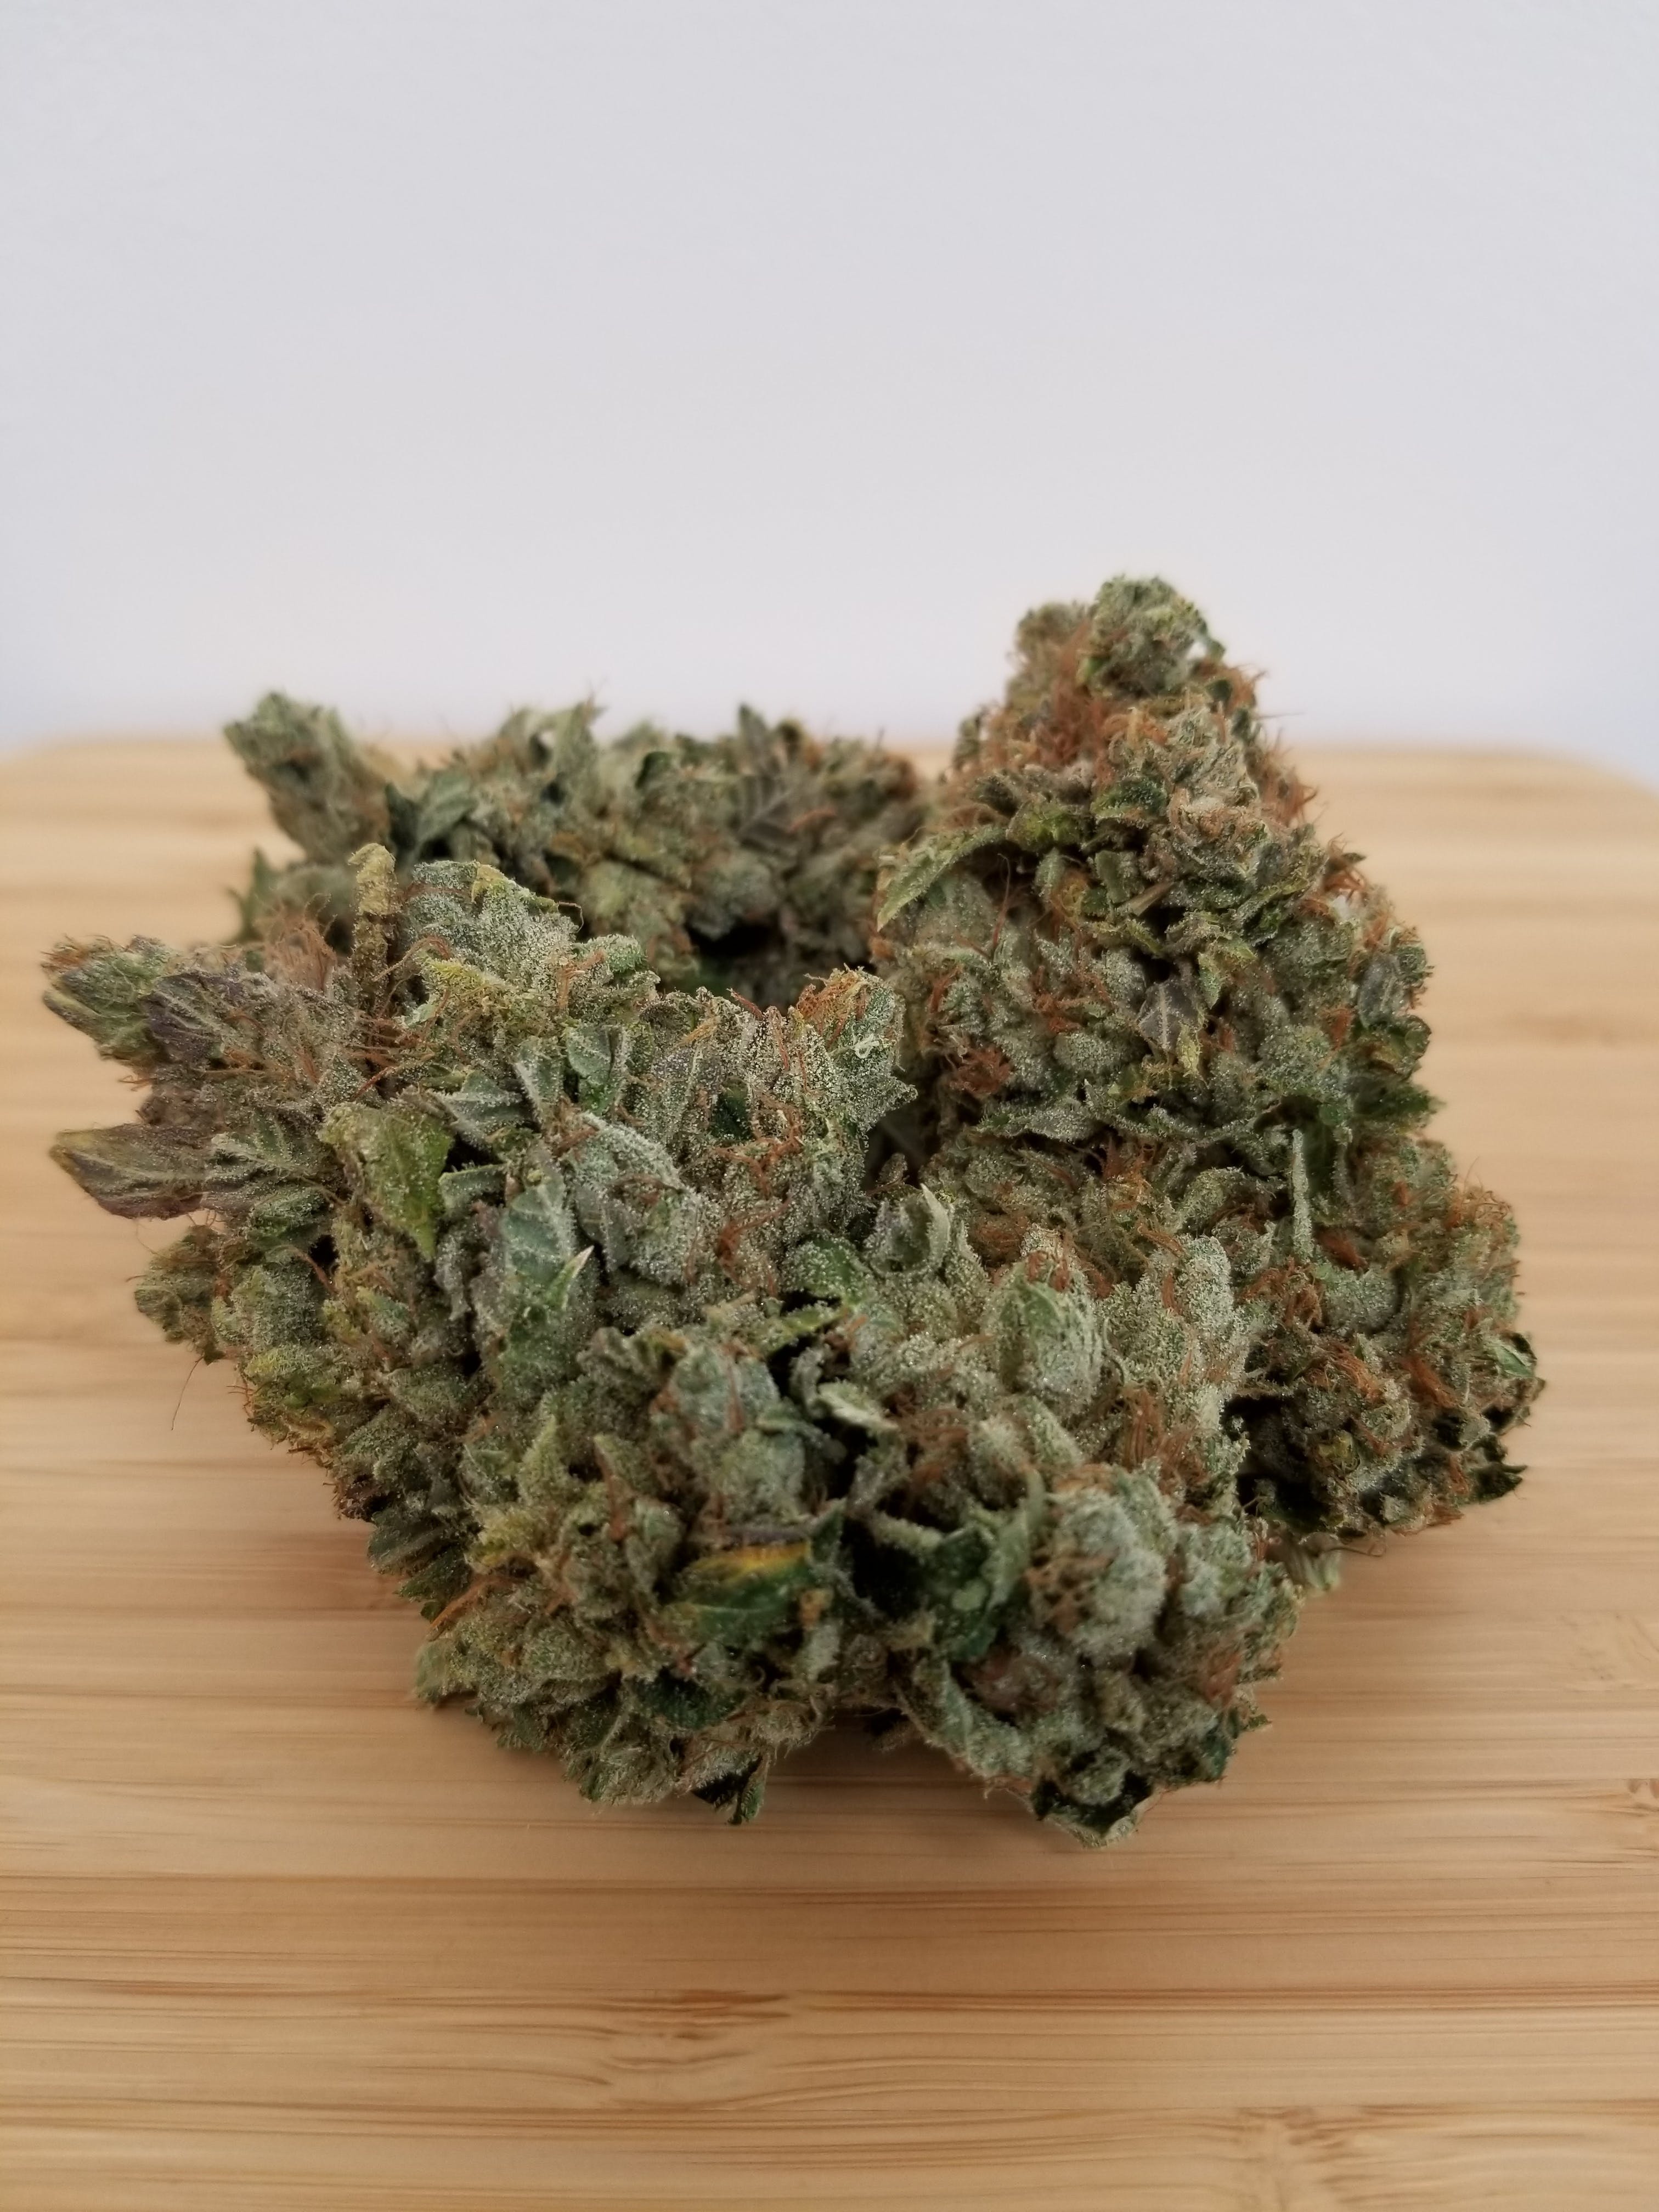 marijuana-dispensaries-2754-e-walnut-st-pasadena-pcc-pr-og-10g-for-24100